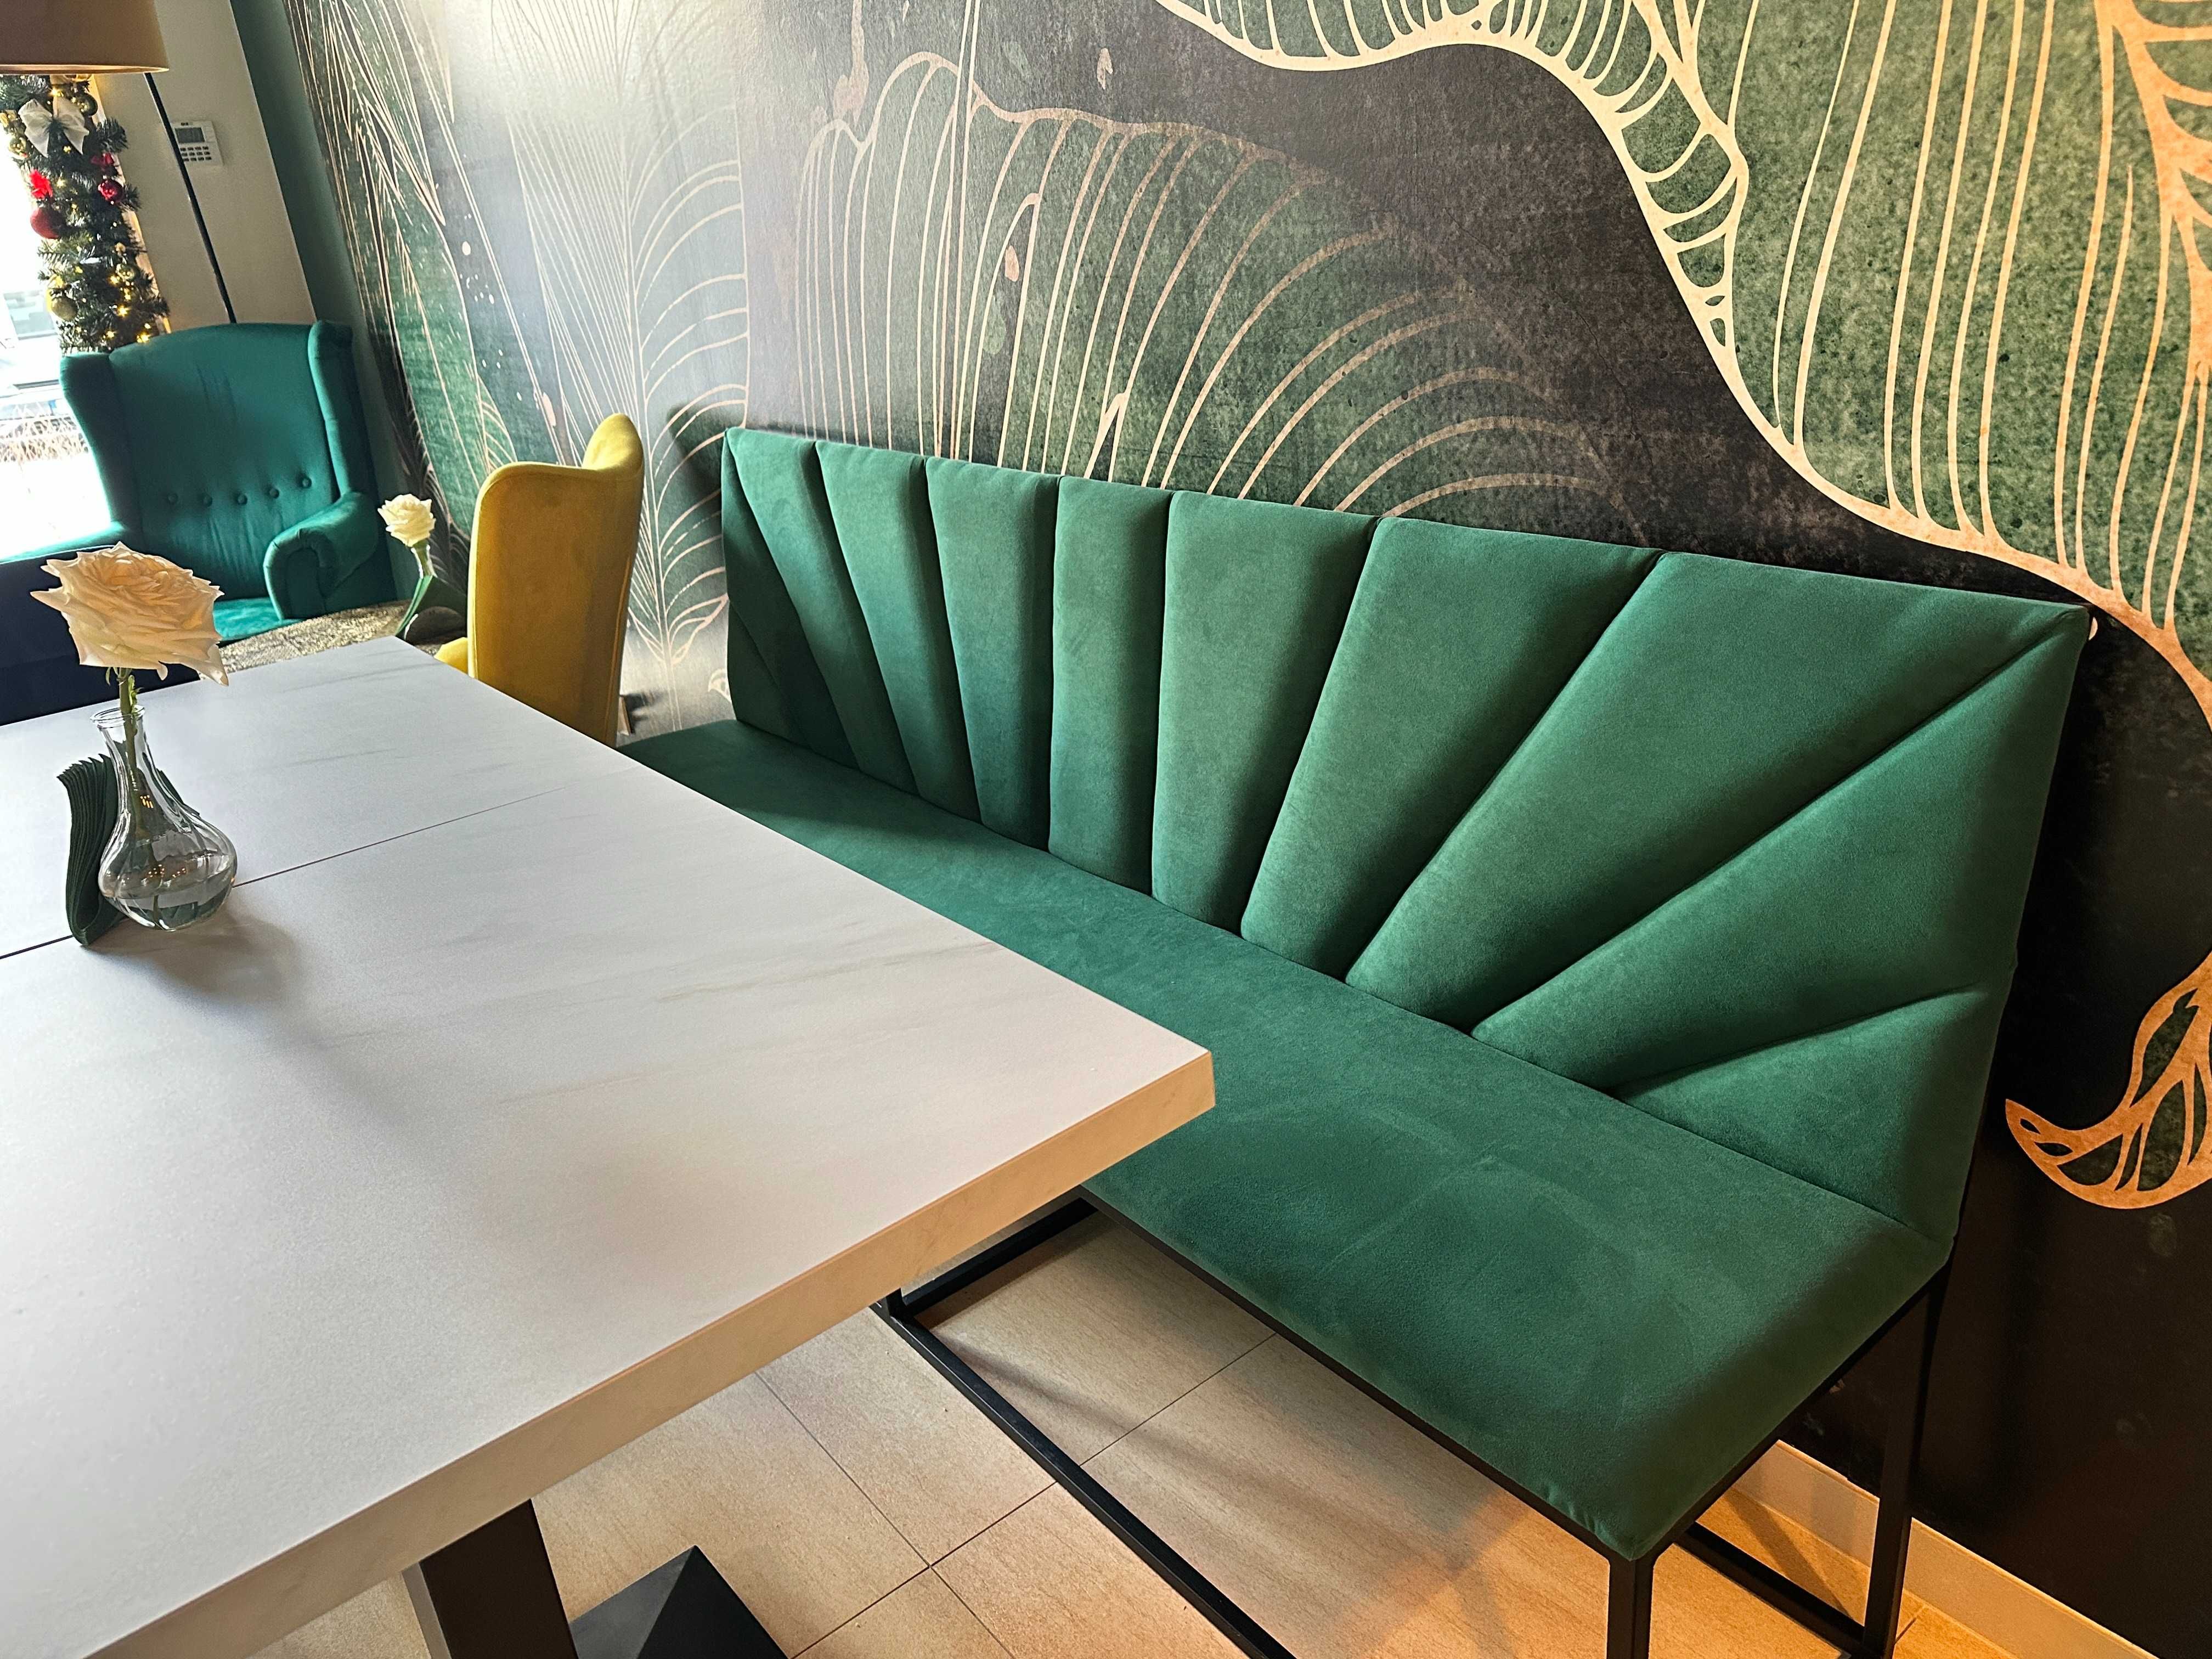 Wyposażenia restauracji barów kawiarni loże - ławki tapicerowane